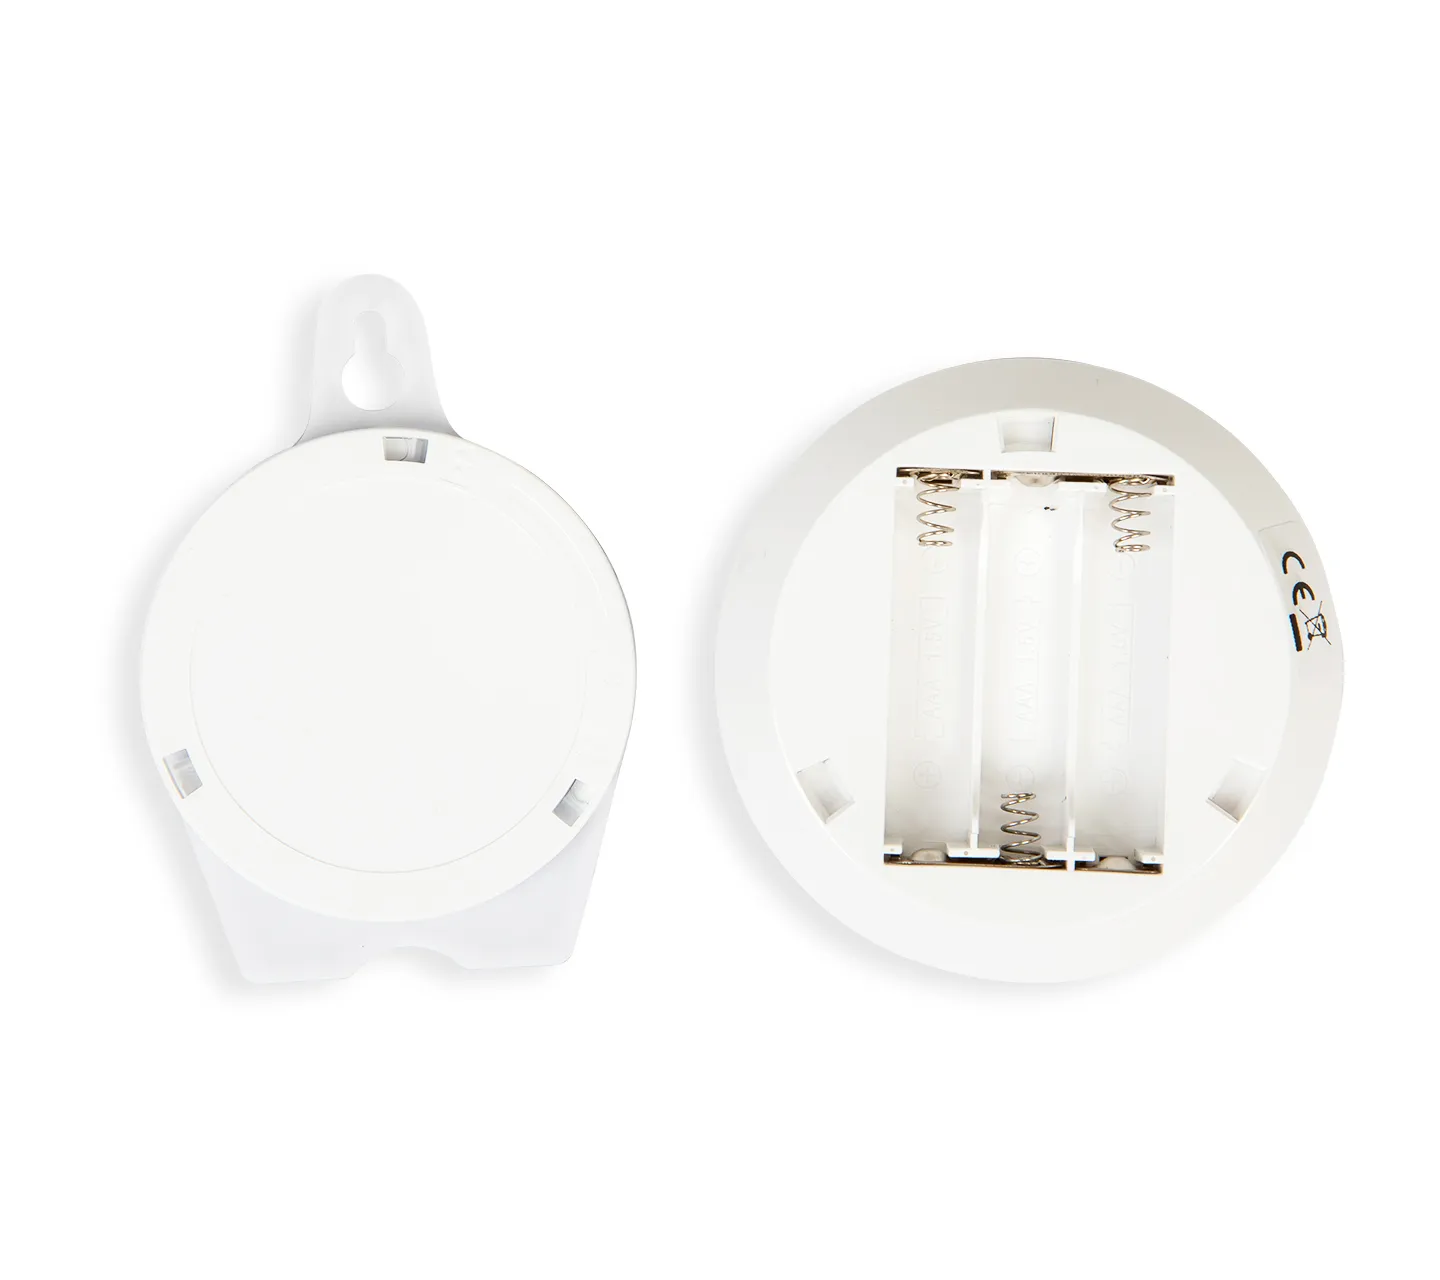 Détection de mouvement de lumière de toilette - Lumière de cuvette de  toilette LED 16 couleurs avancée, mémoire interne, détection de lumière  (blanc) 